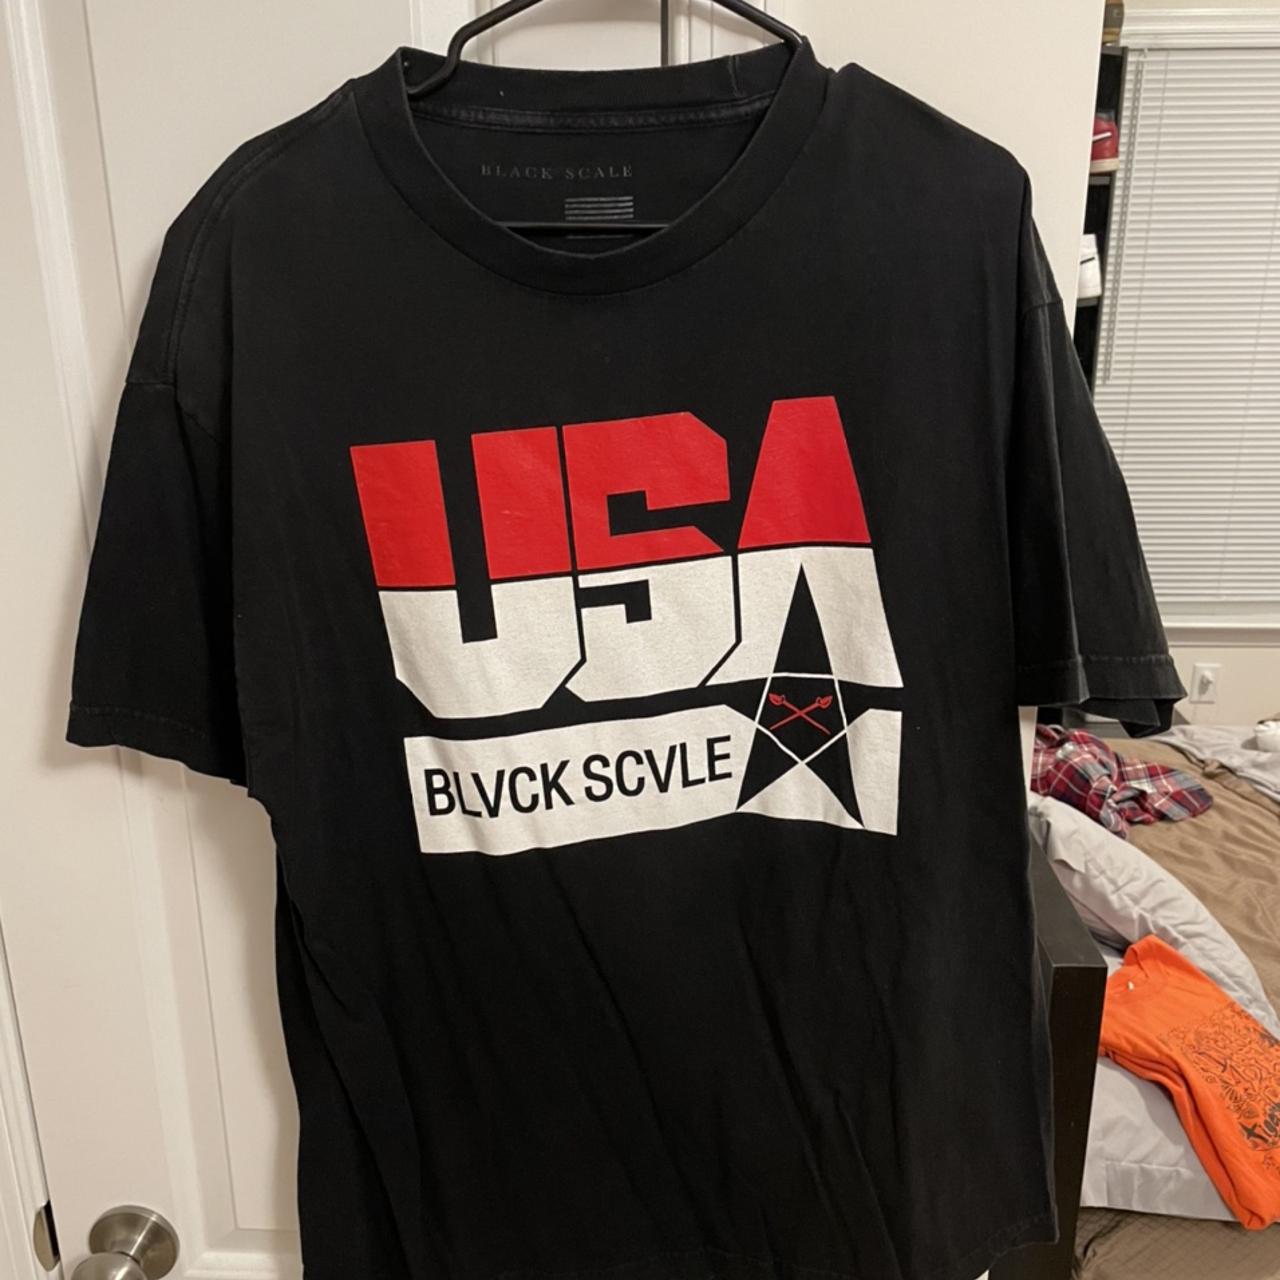 Product Image 1 - Blvck Scvle USA vintage shirt.